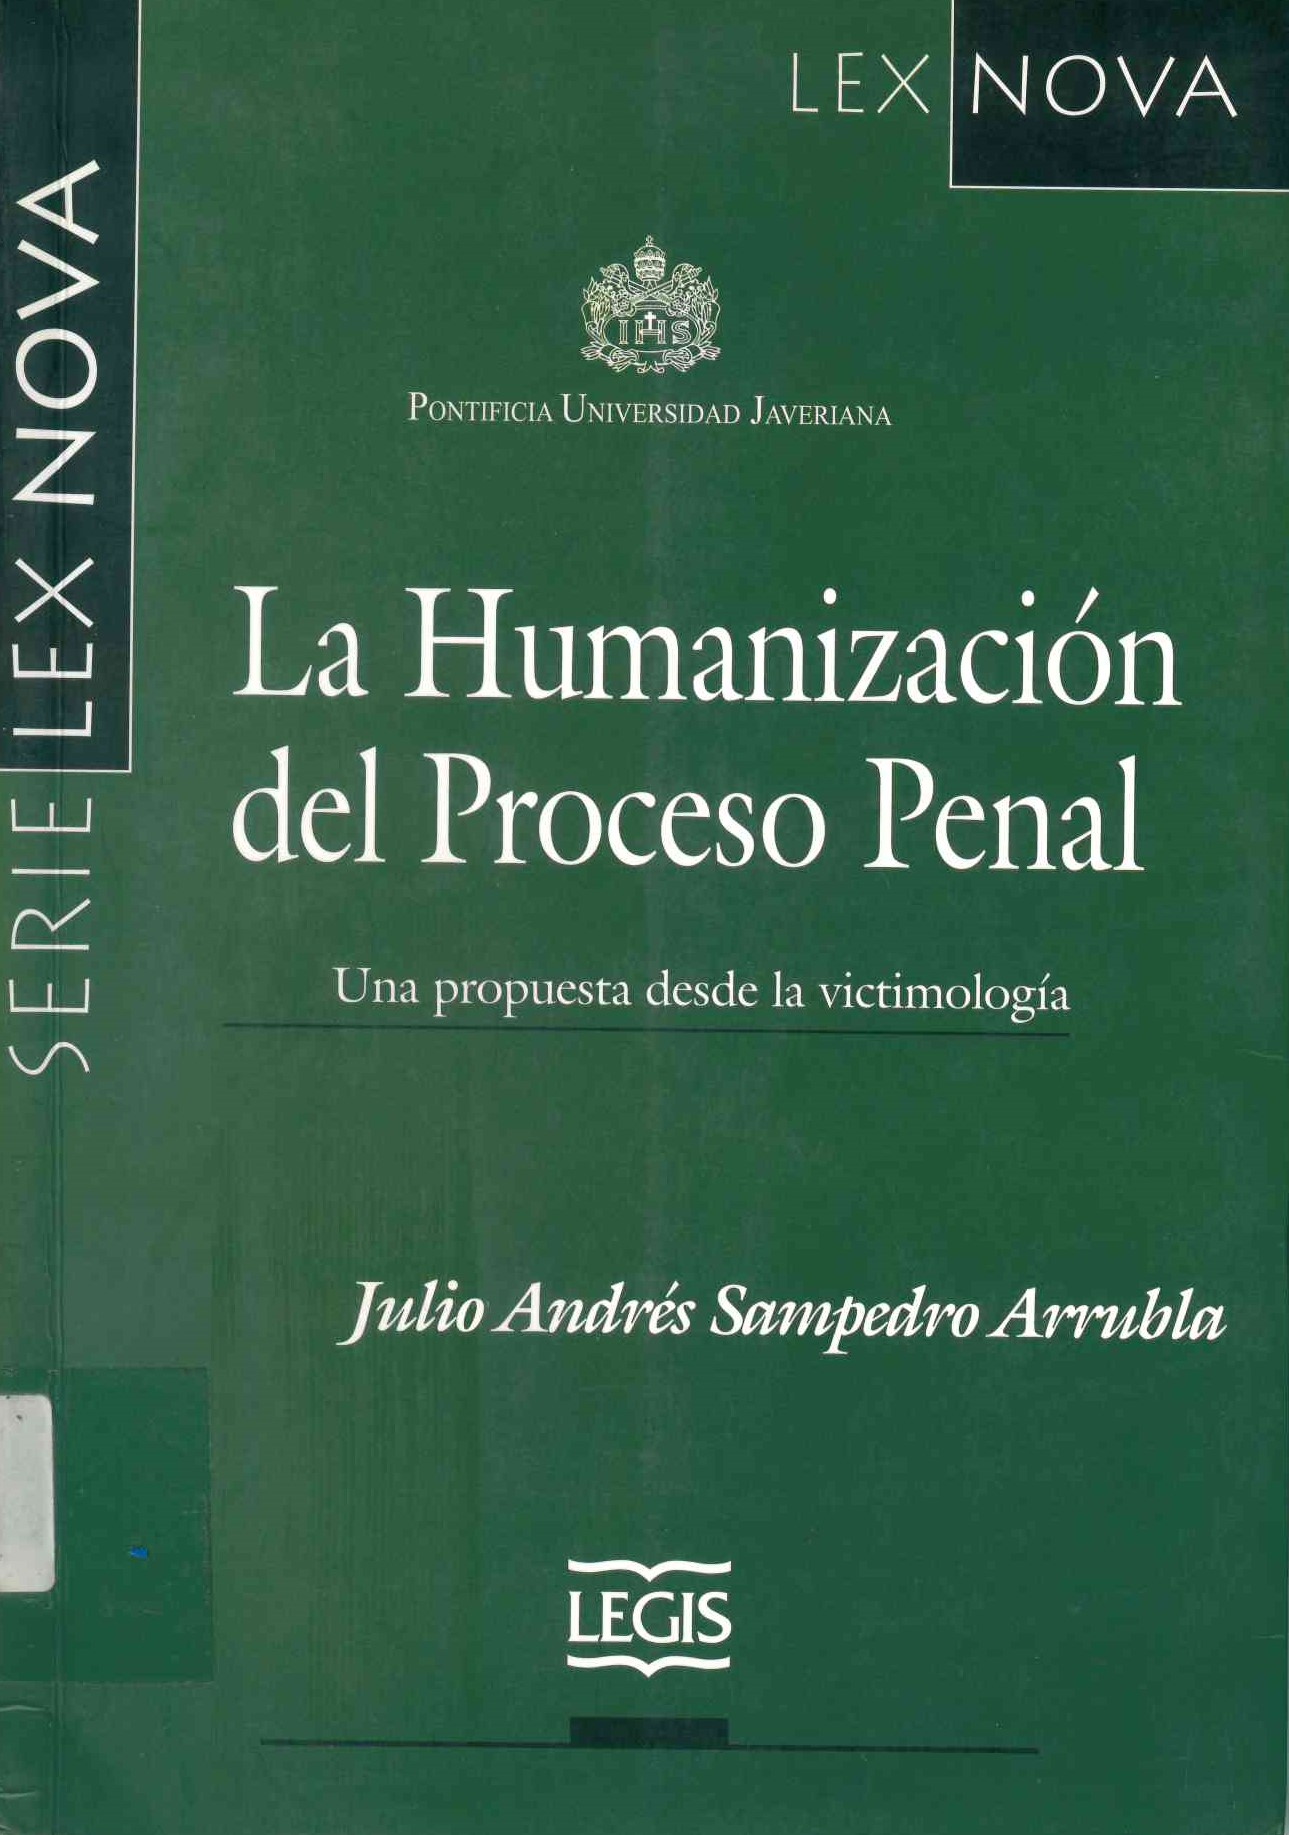 La humanización del proceso penal : una propuesta desde la victimología